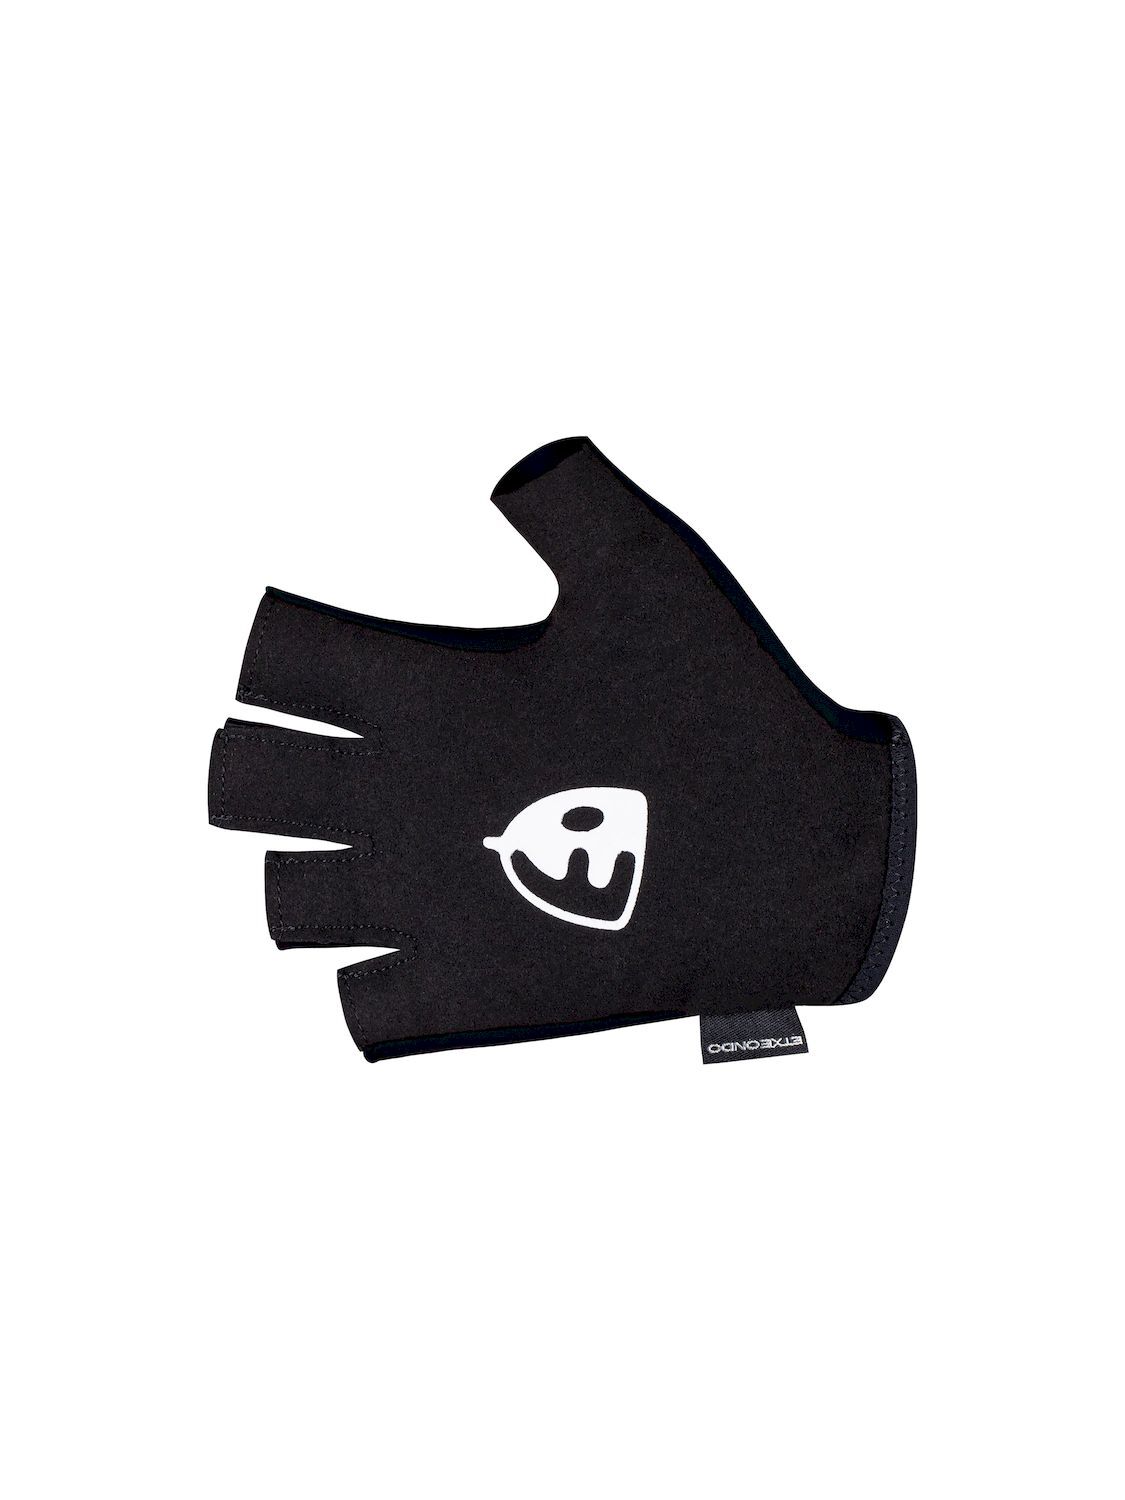 Etxeondo Bera - Short finger gloves